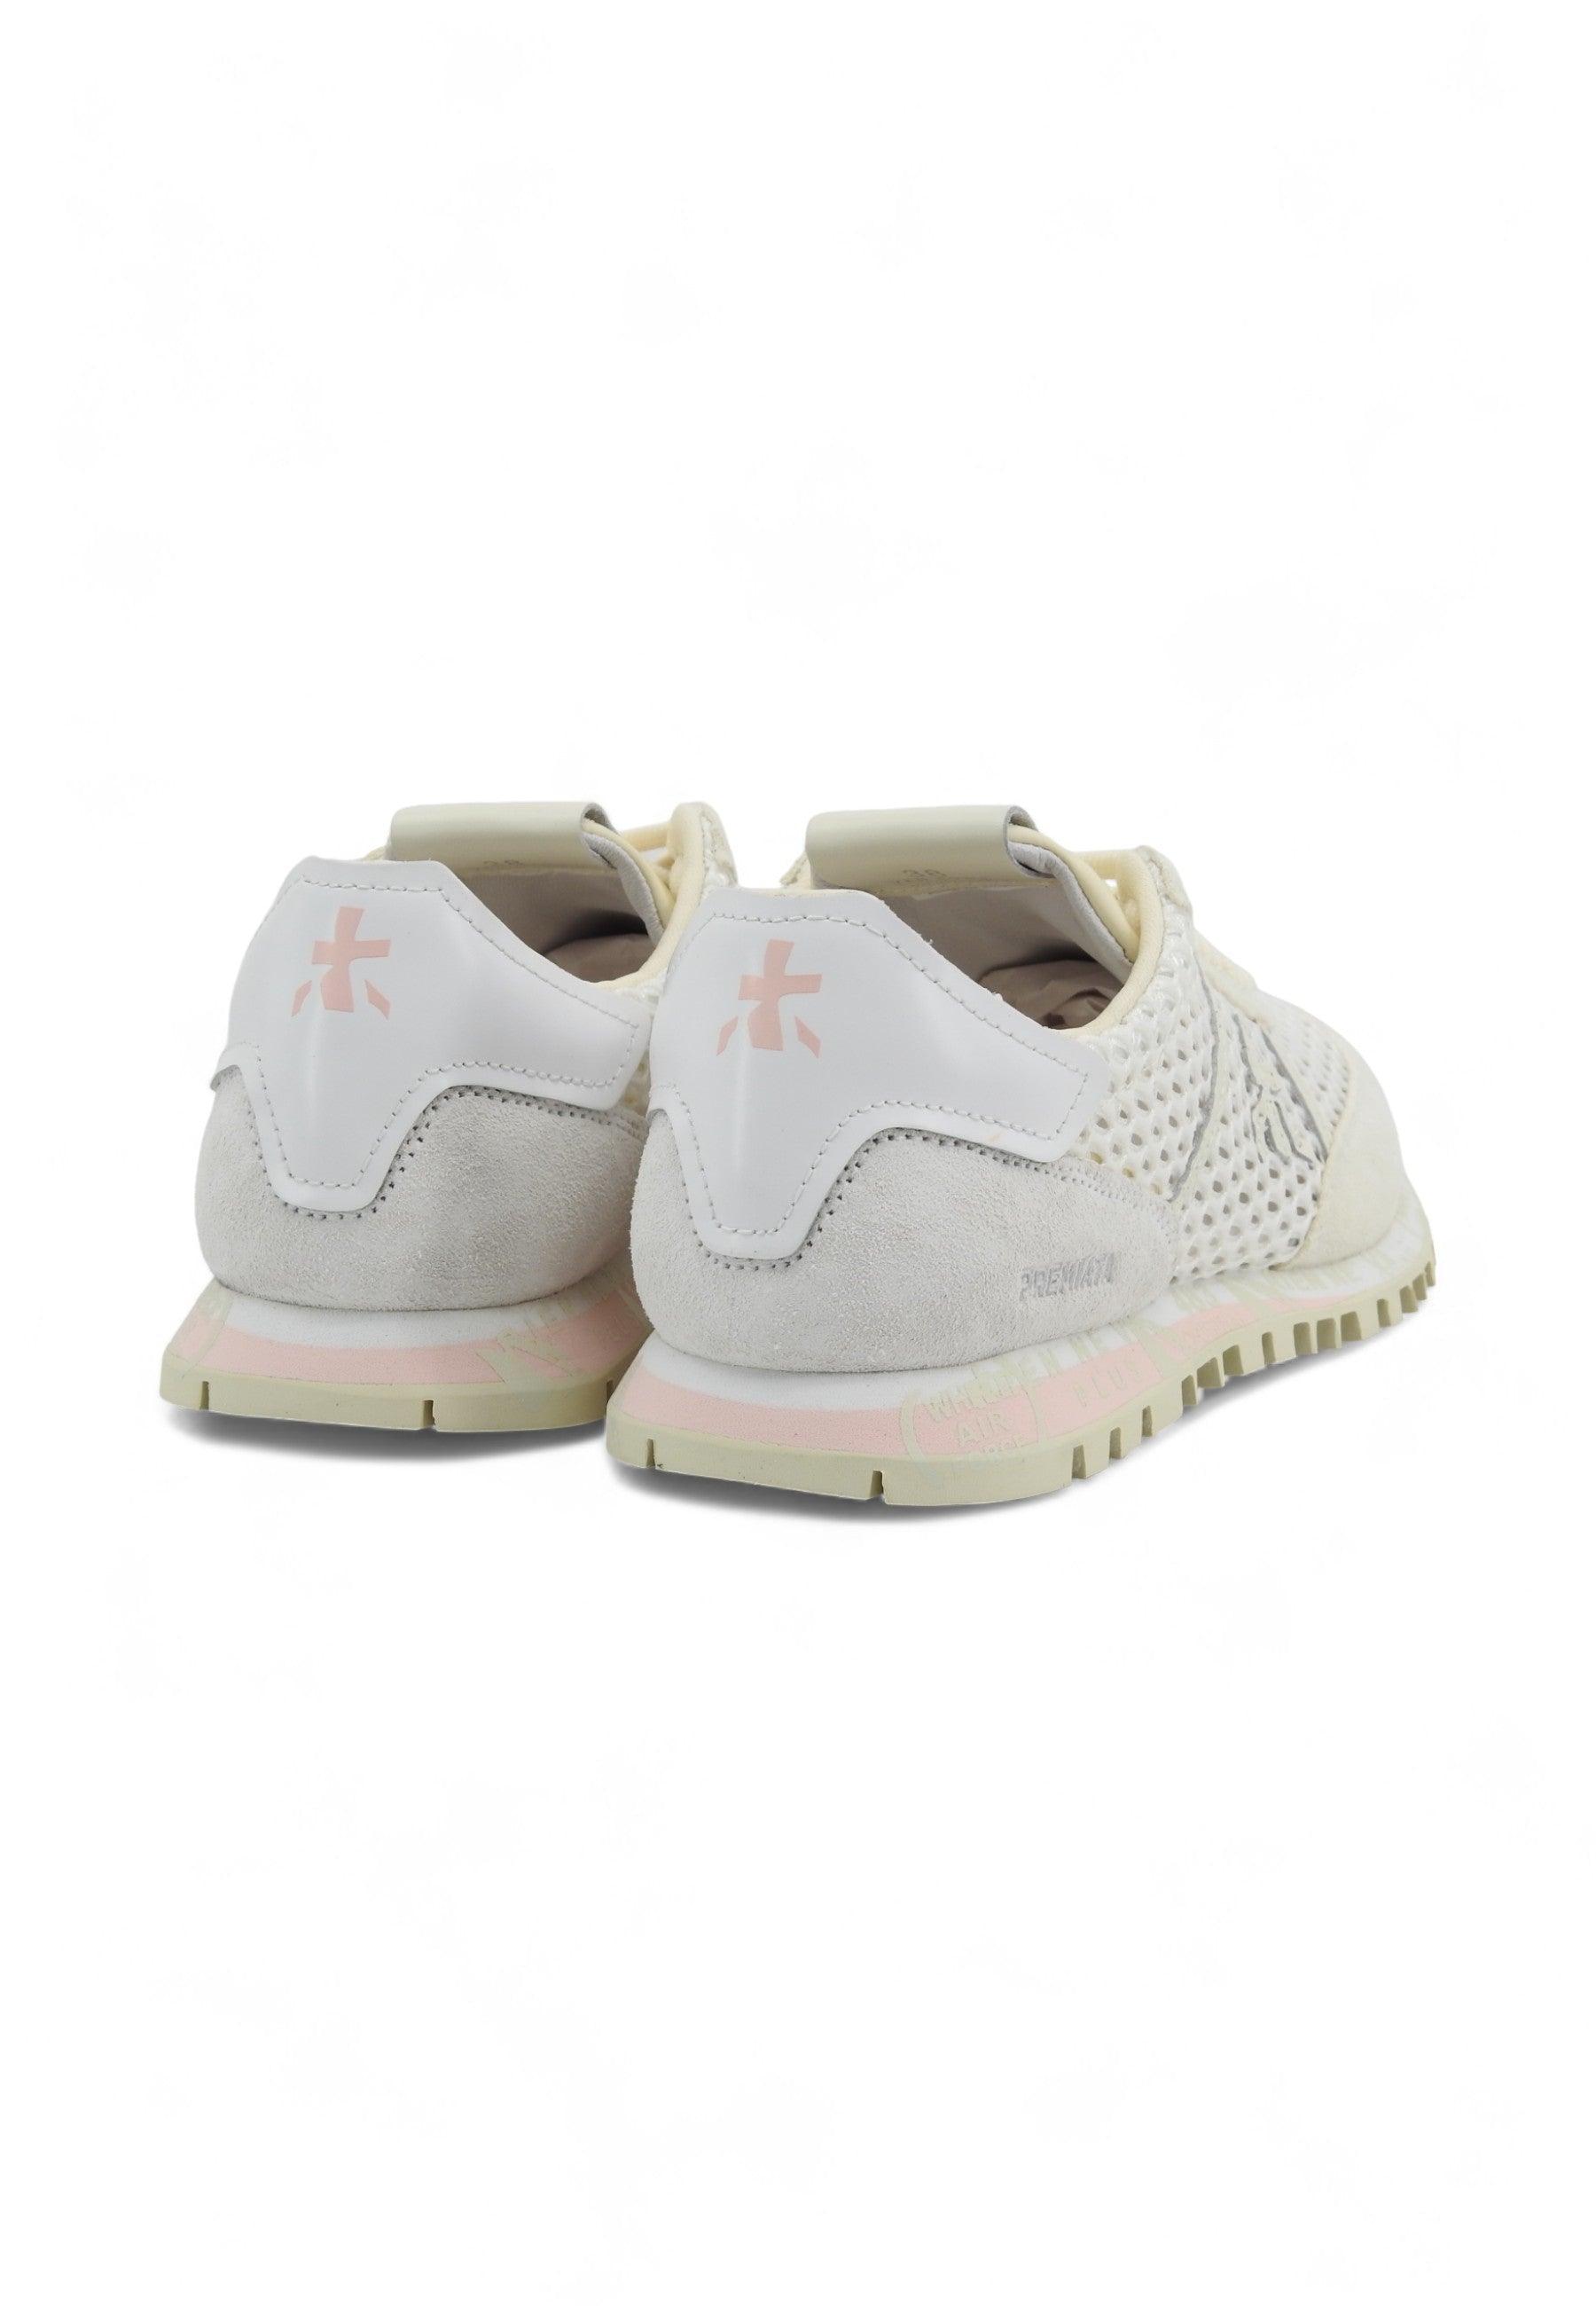 PREMIATA Sneaker Donna Cream Bianco SEAND-6754 - Sandrini Calzature e Abbigliamento